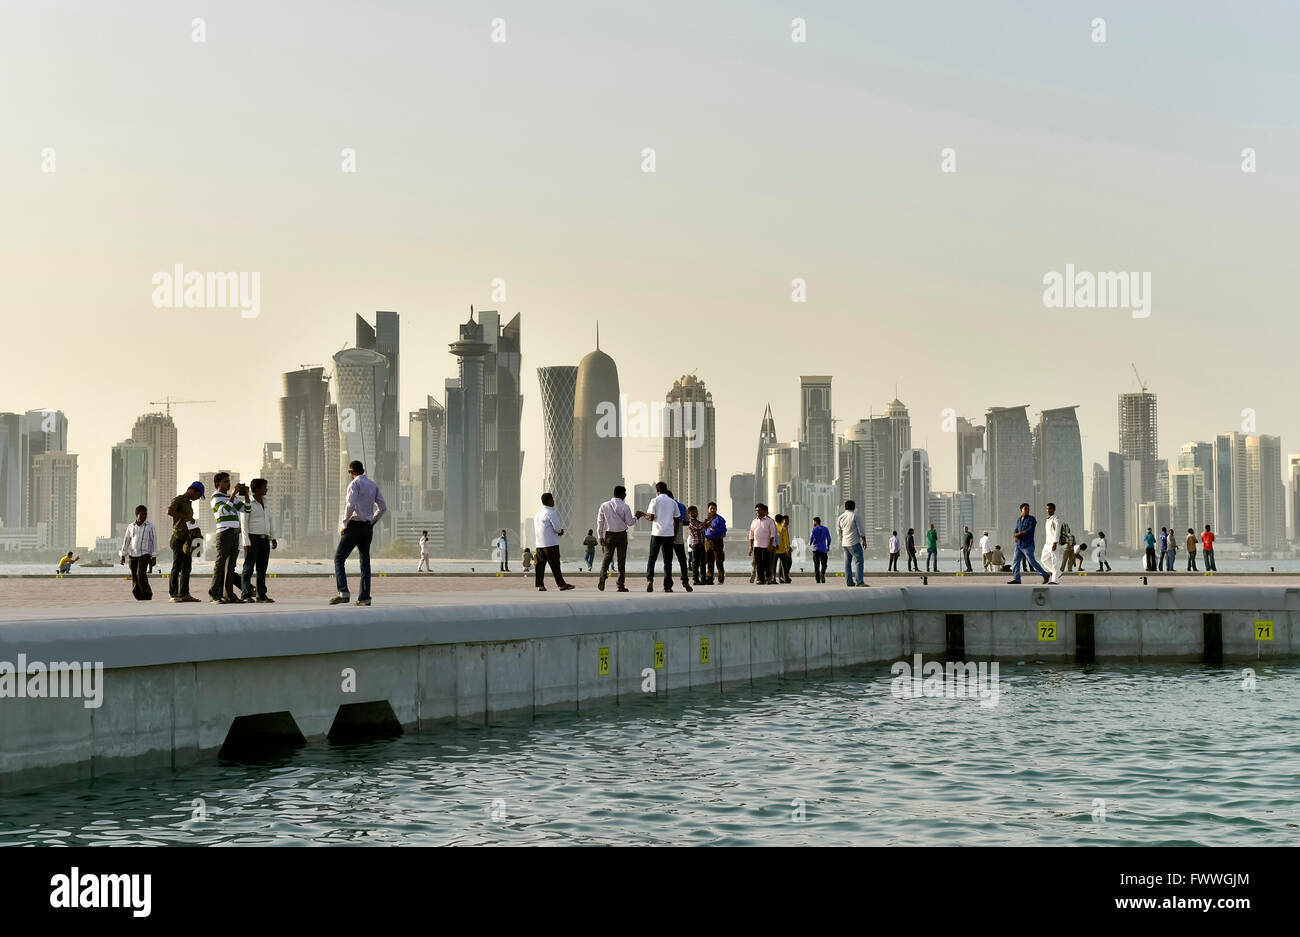 Los transeúntes y horizonte de rascacielos, Doha, Qatar Foto de stock